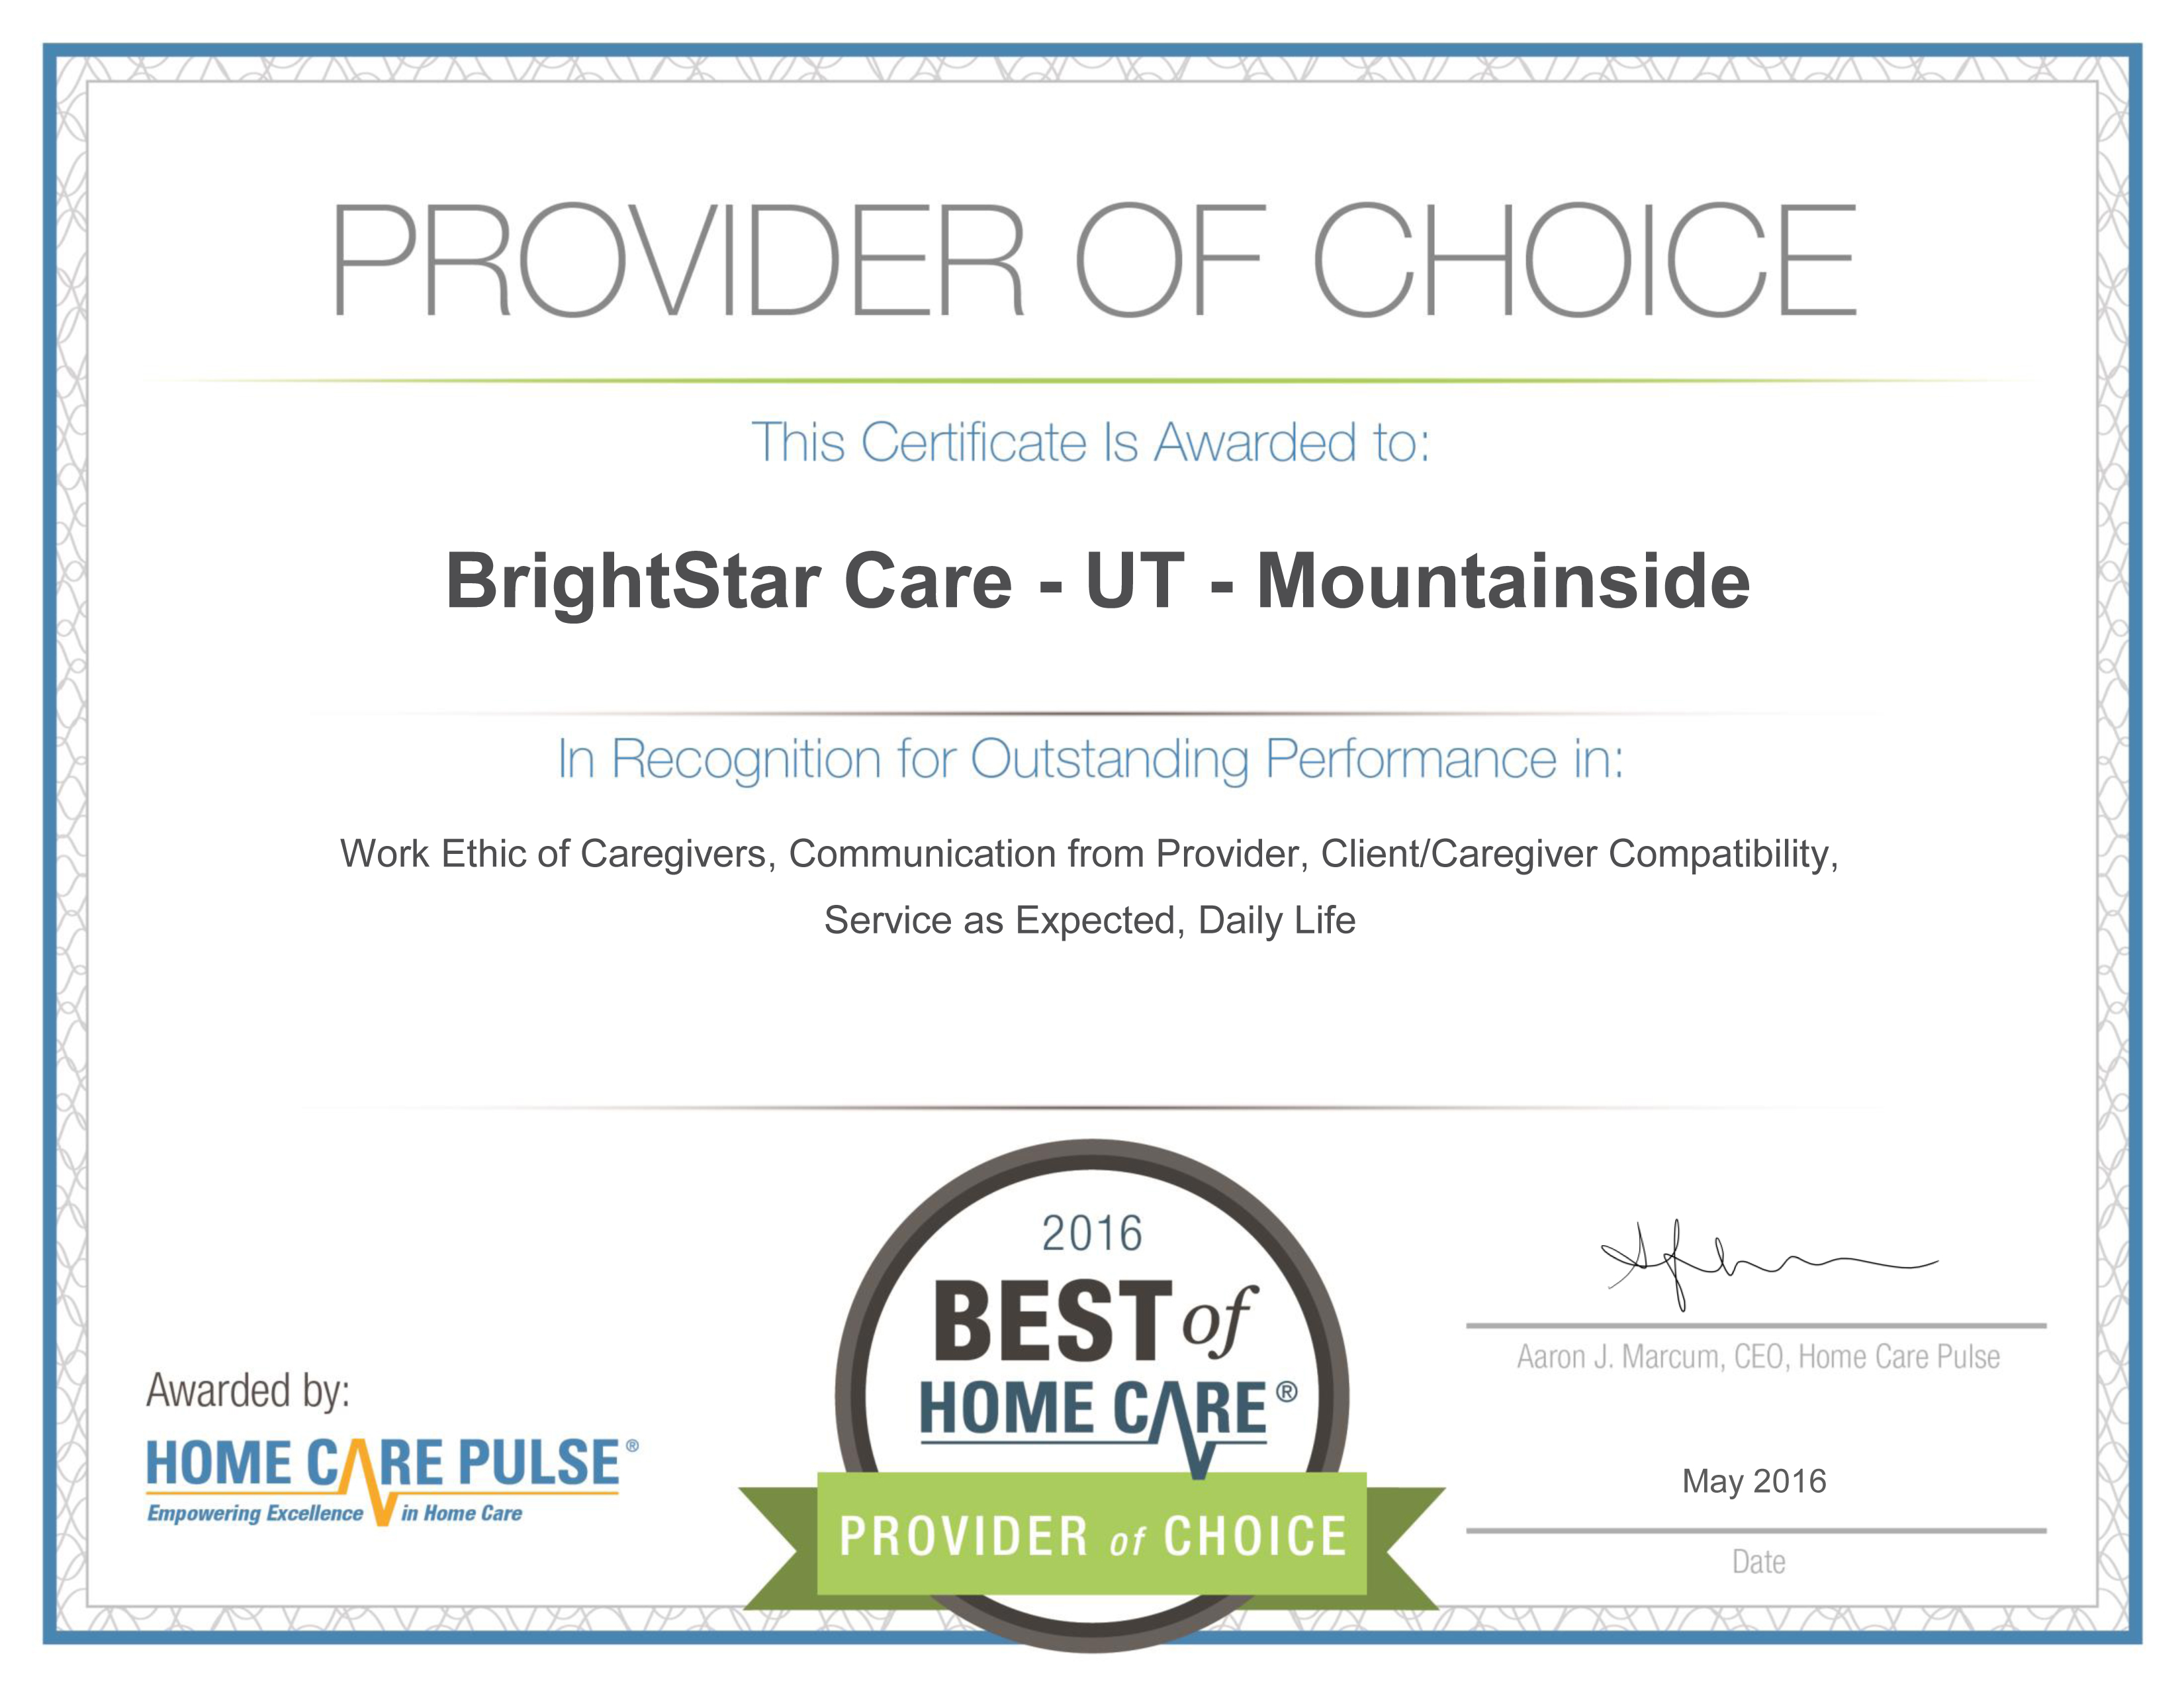 BrightStar Care - UT - Mountainside POC